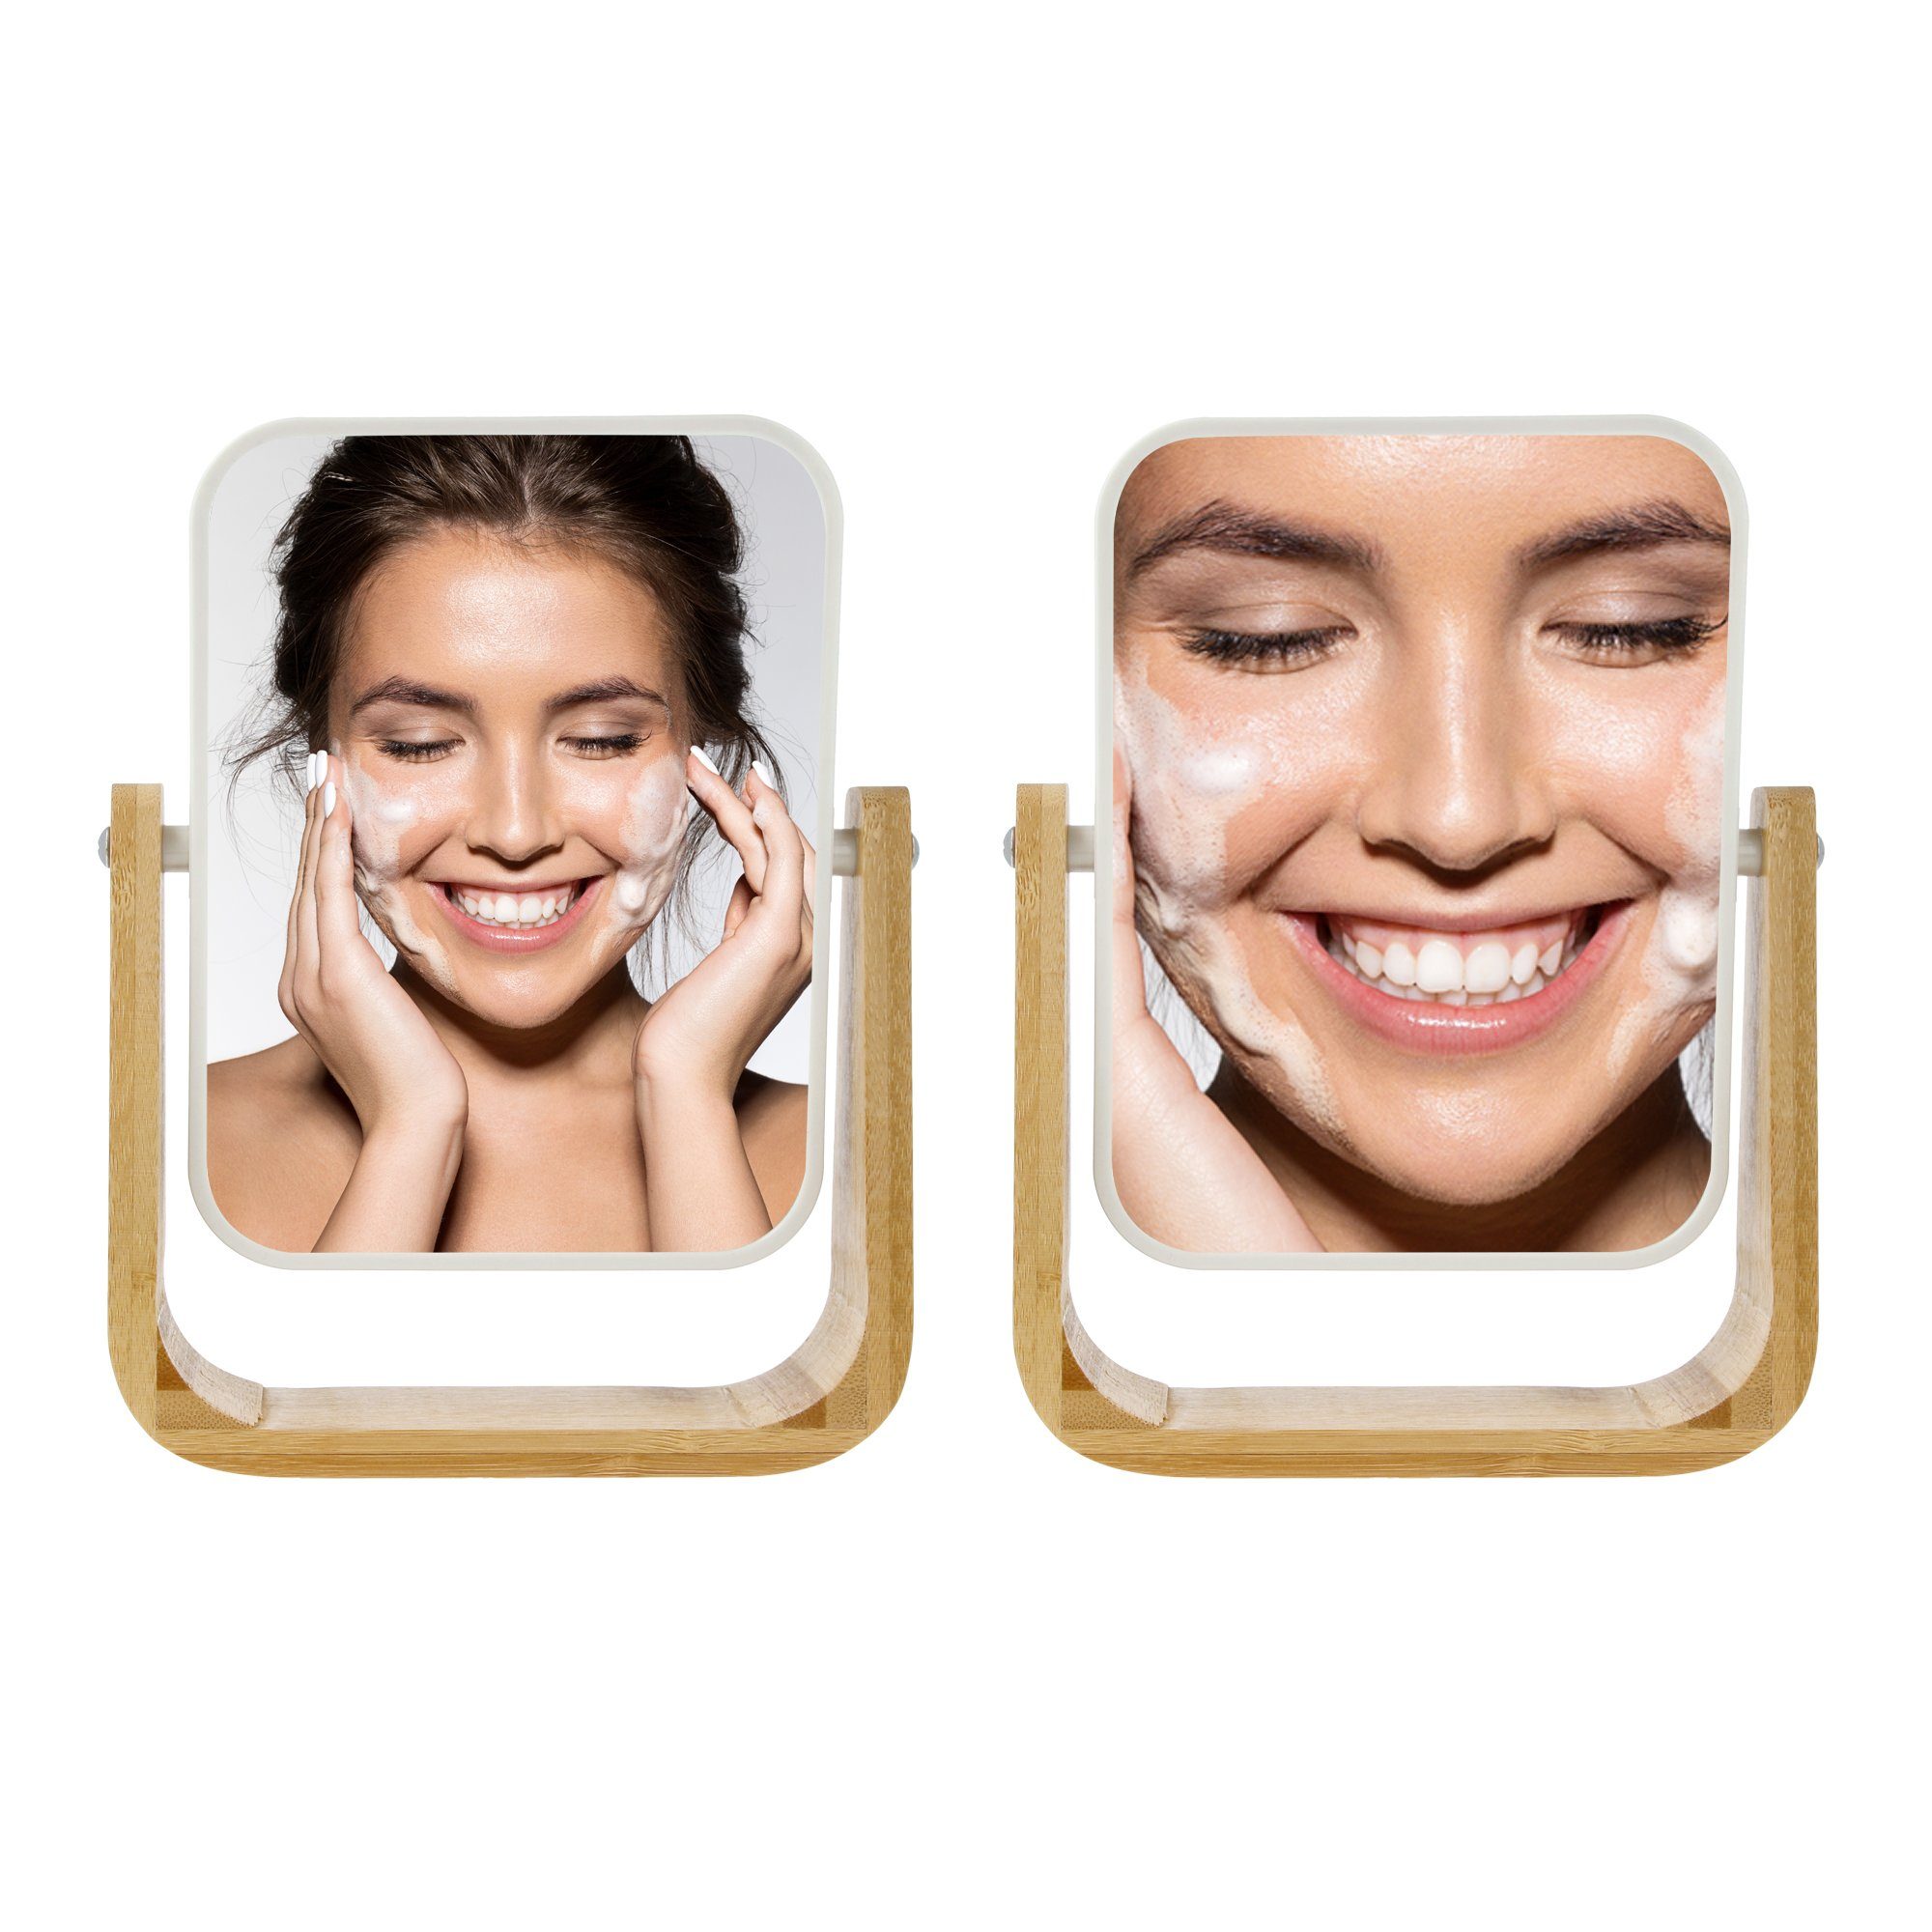 Vergrößerung Spiegel mit 5-fach Beauty Bambusspiegel PARSA